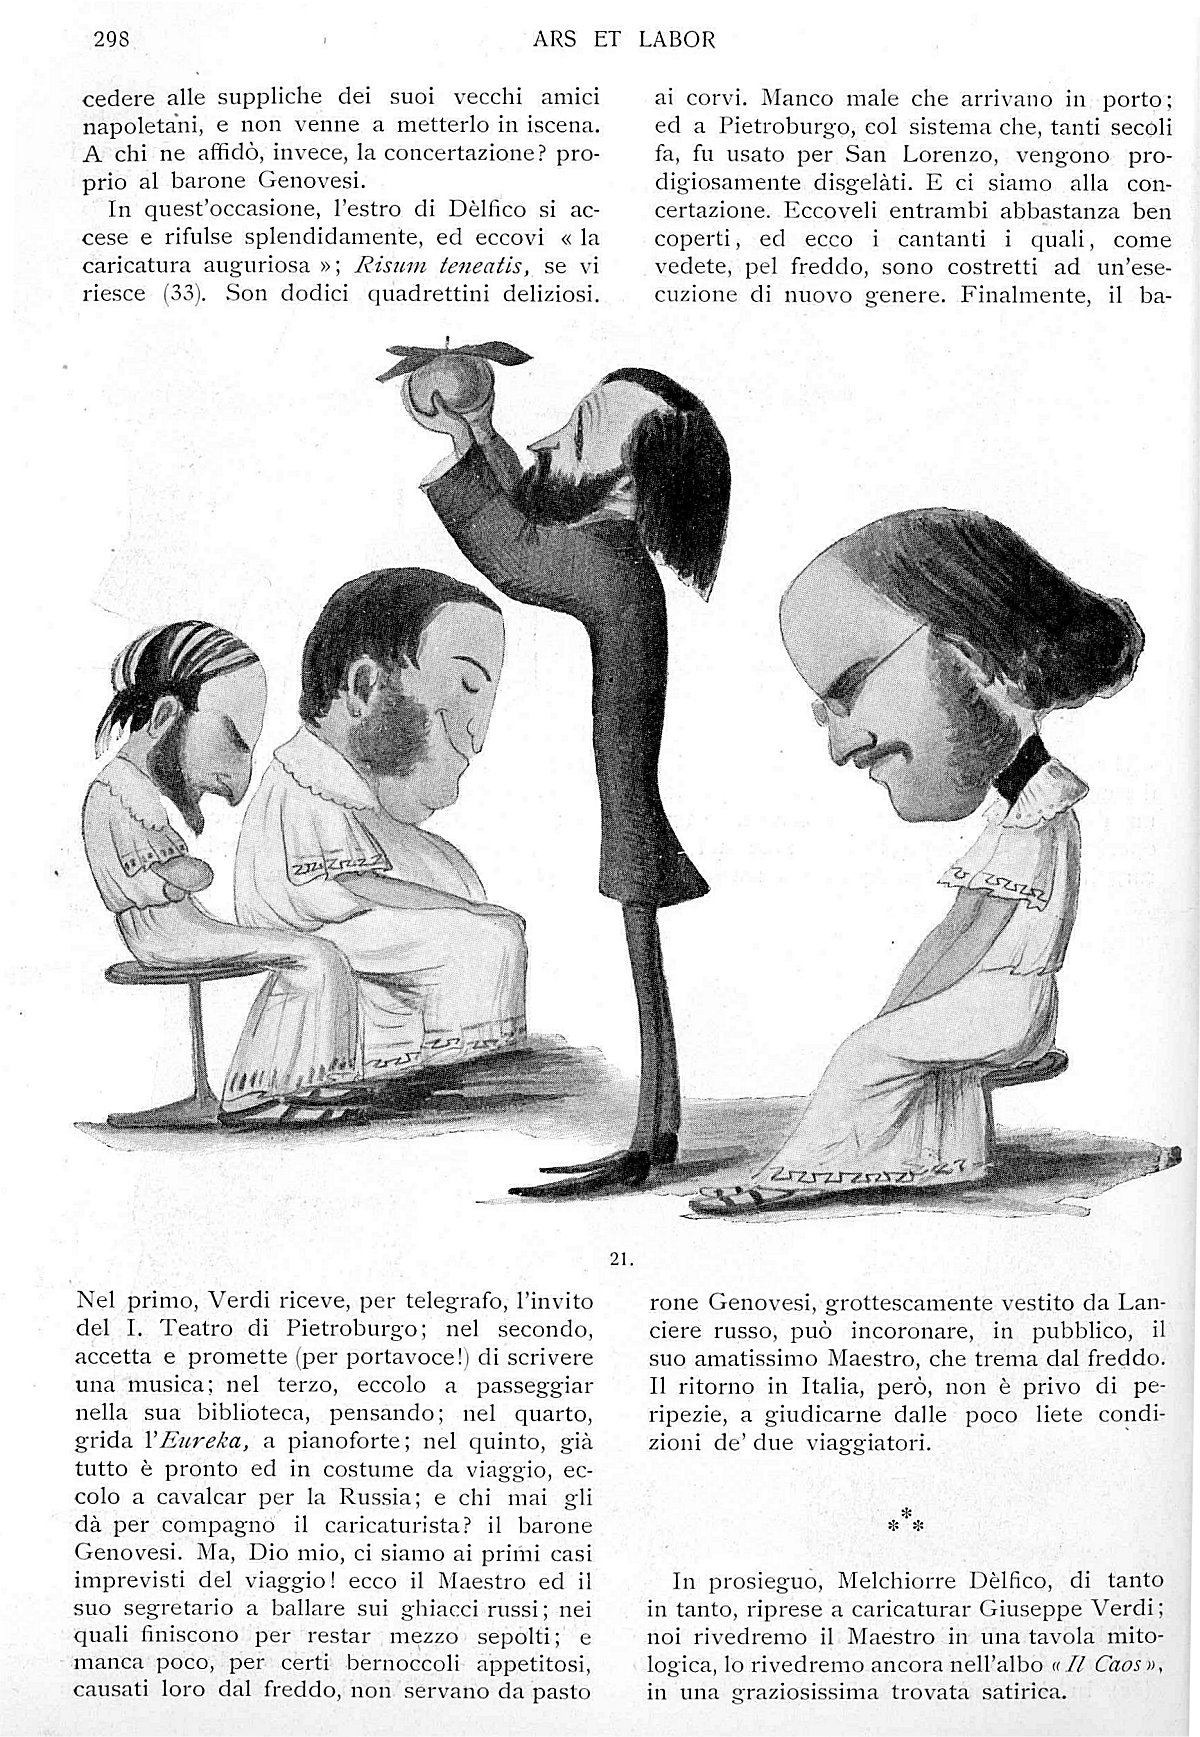 "Ars et Labor", Aprile 1906, anno 61°, n. 4, pag. 298